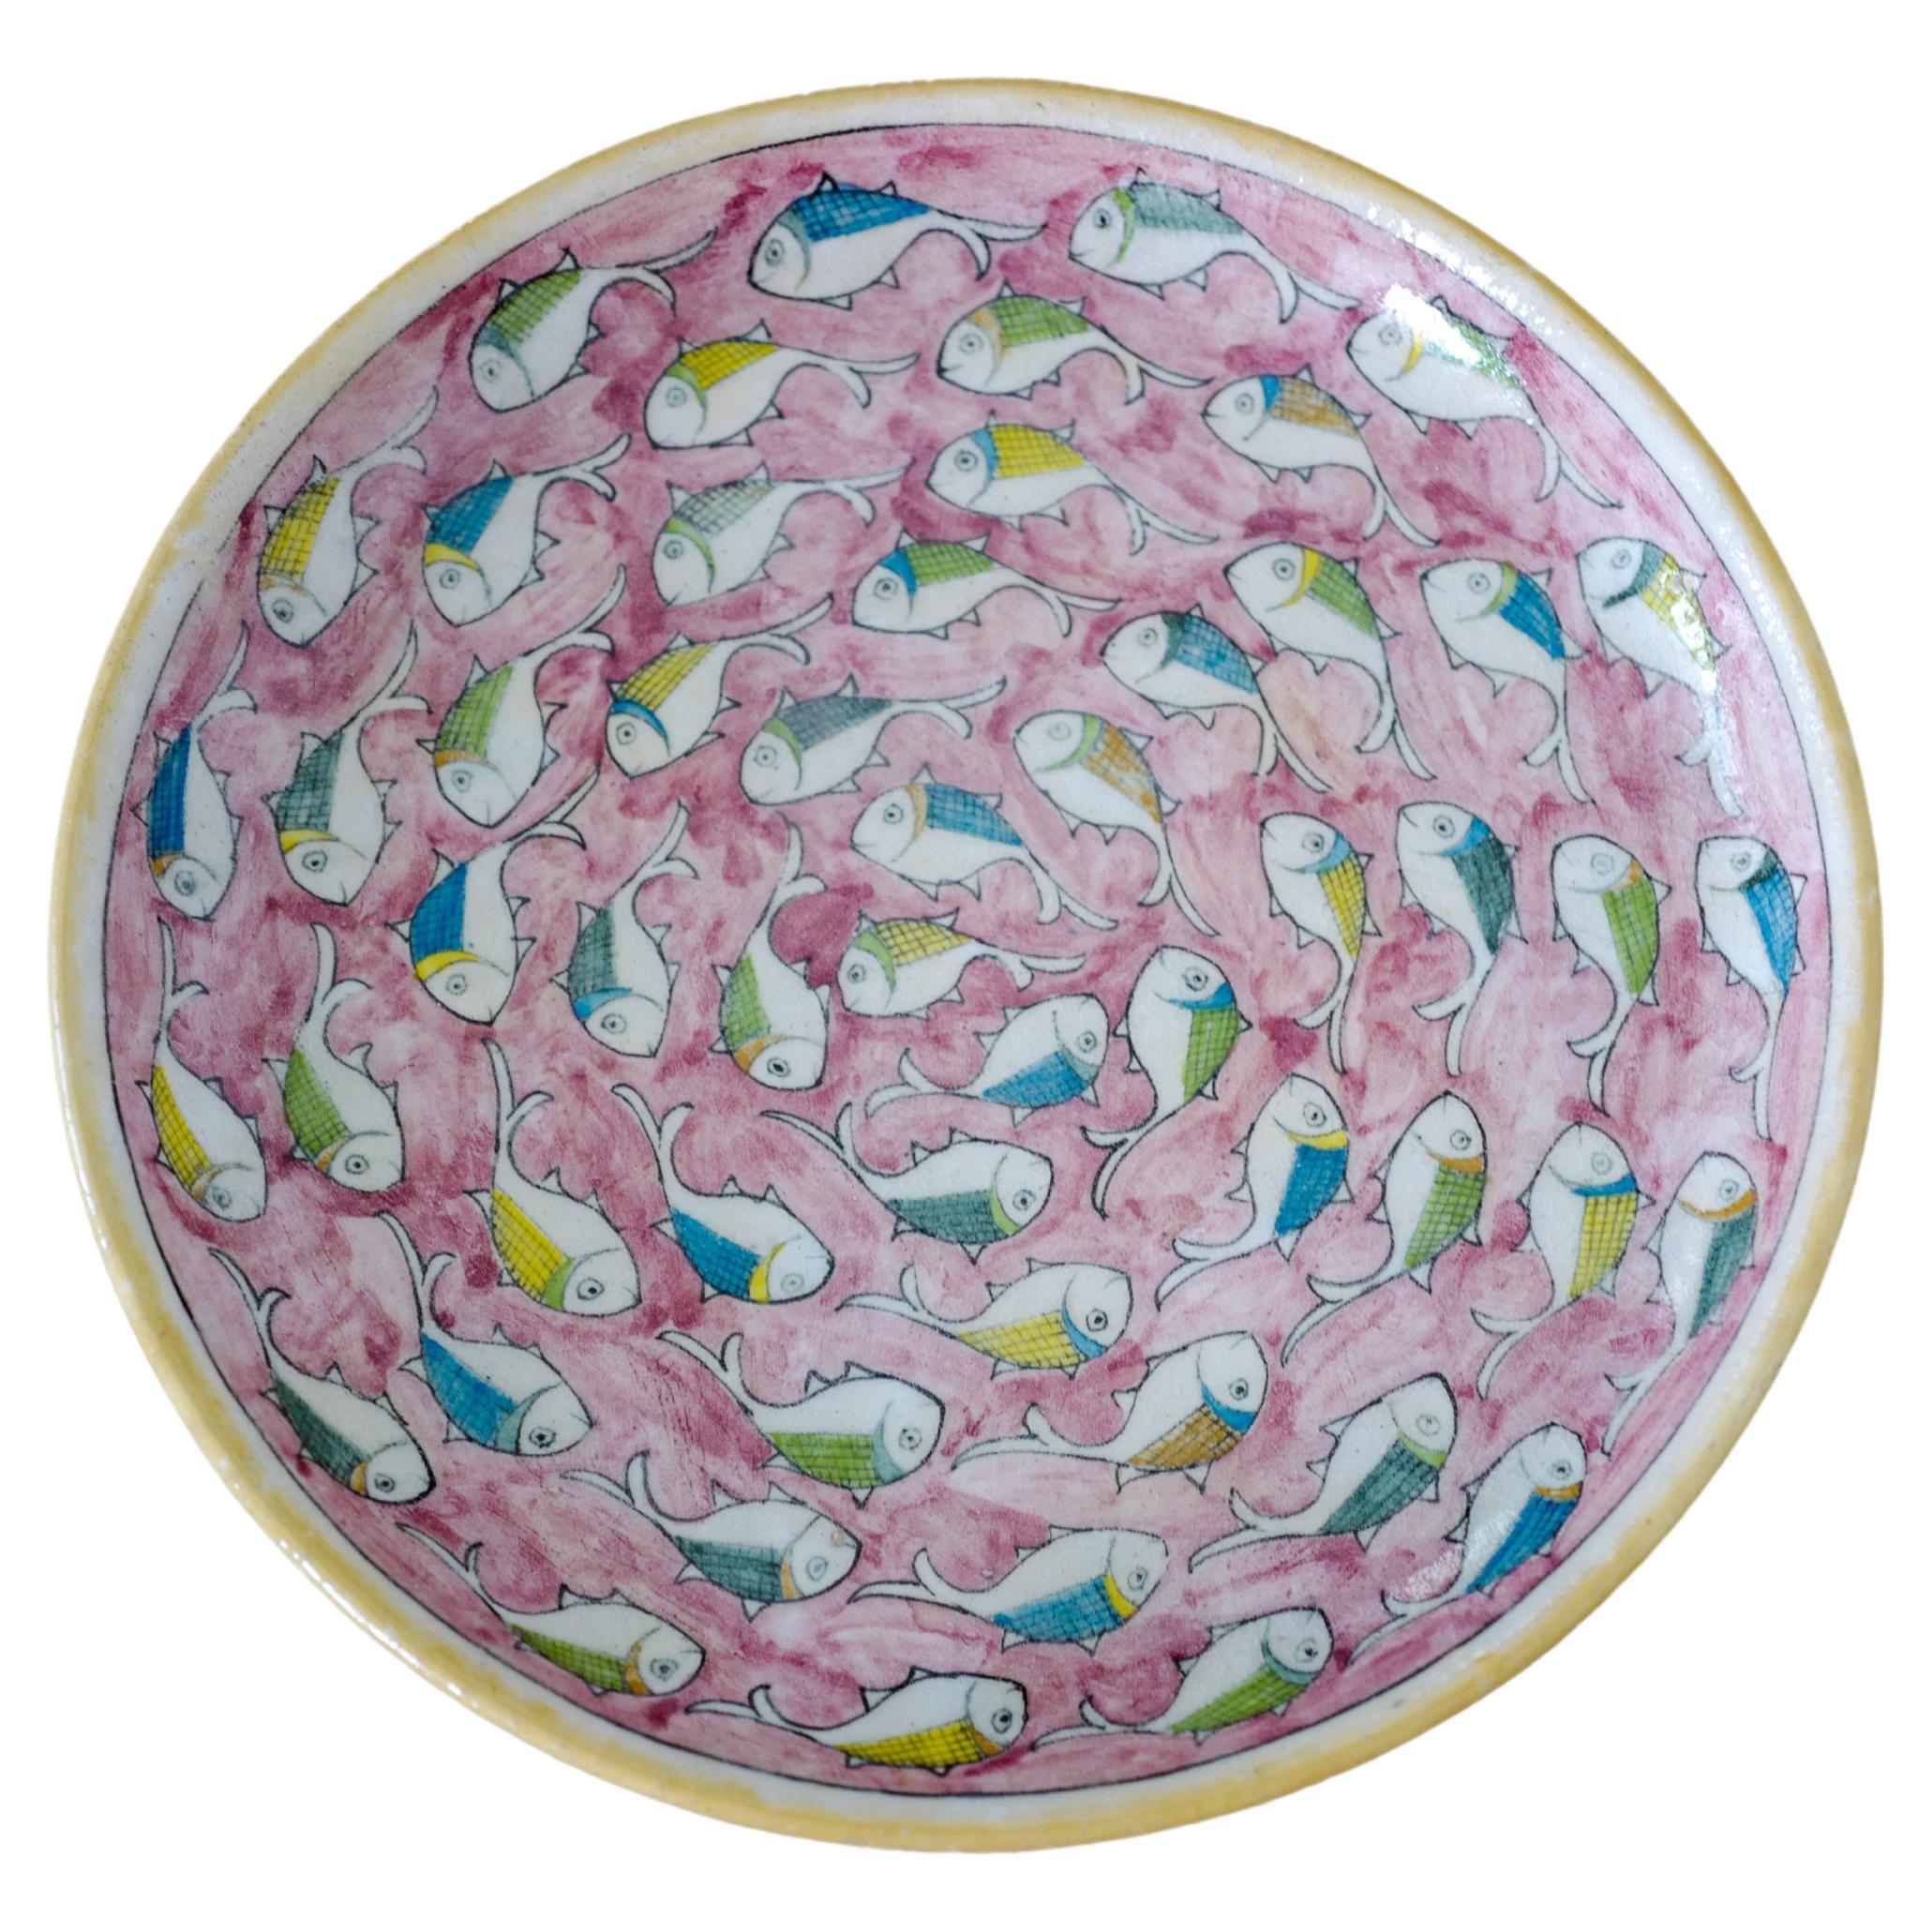 Sicilian crackle ceramic hand painted pink fish design serving platter